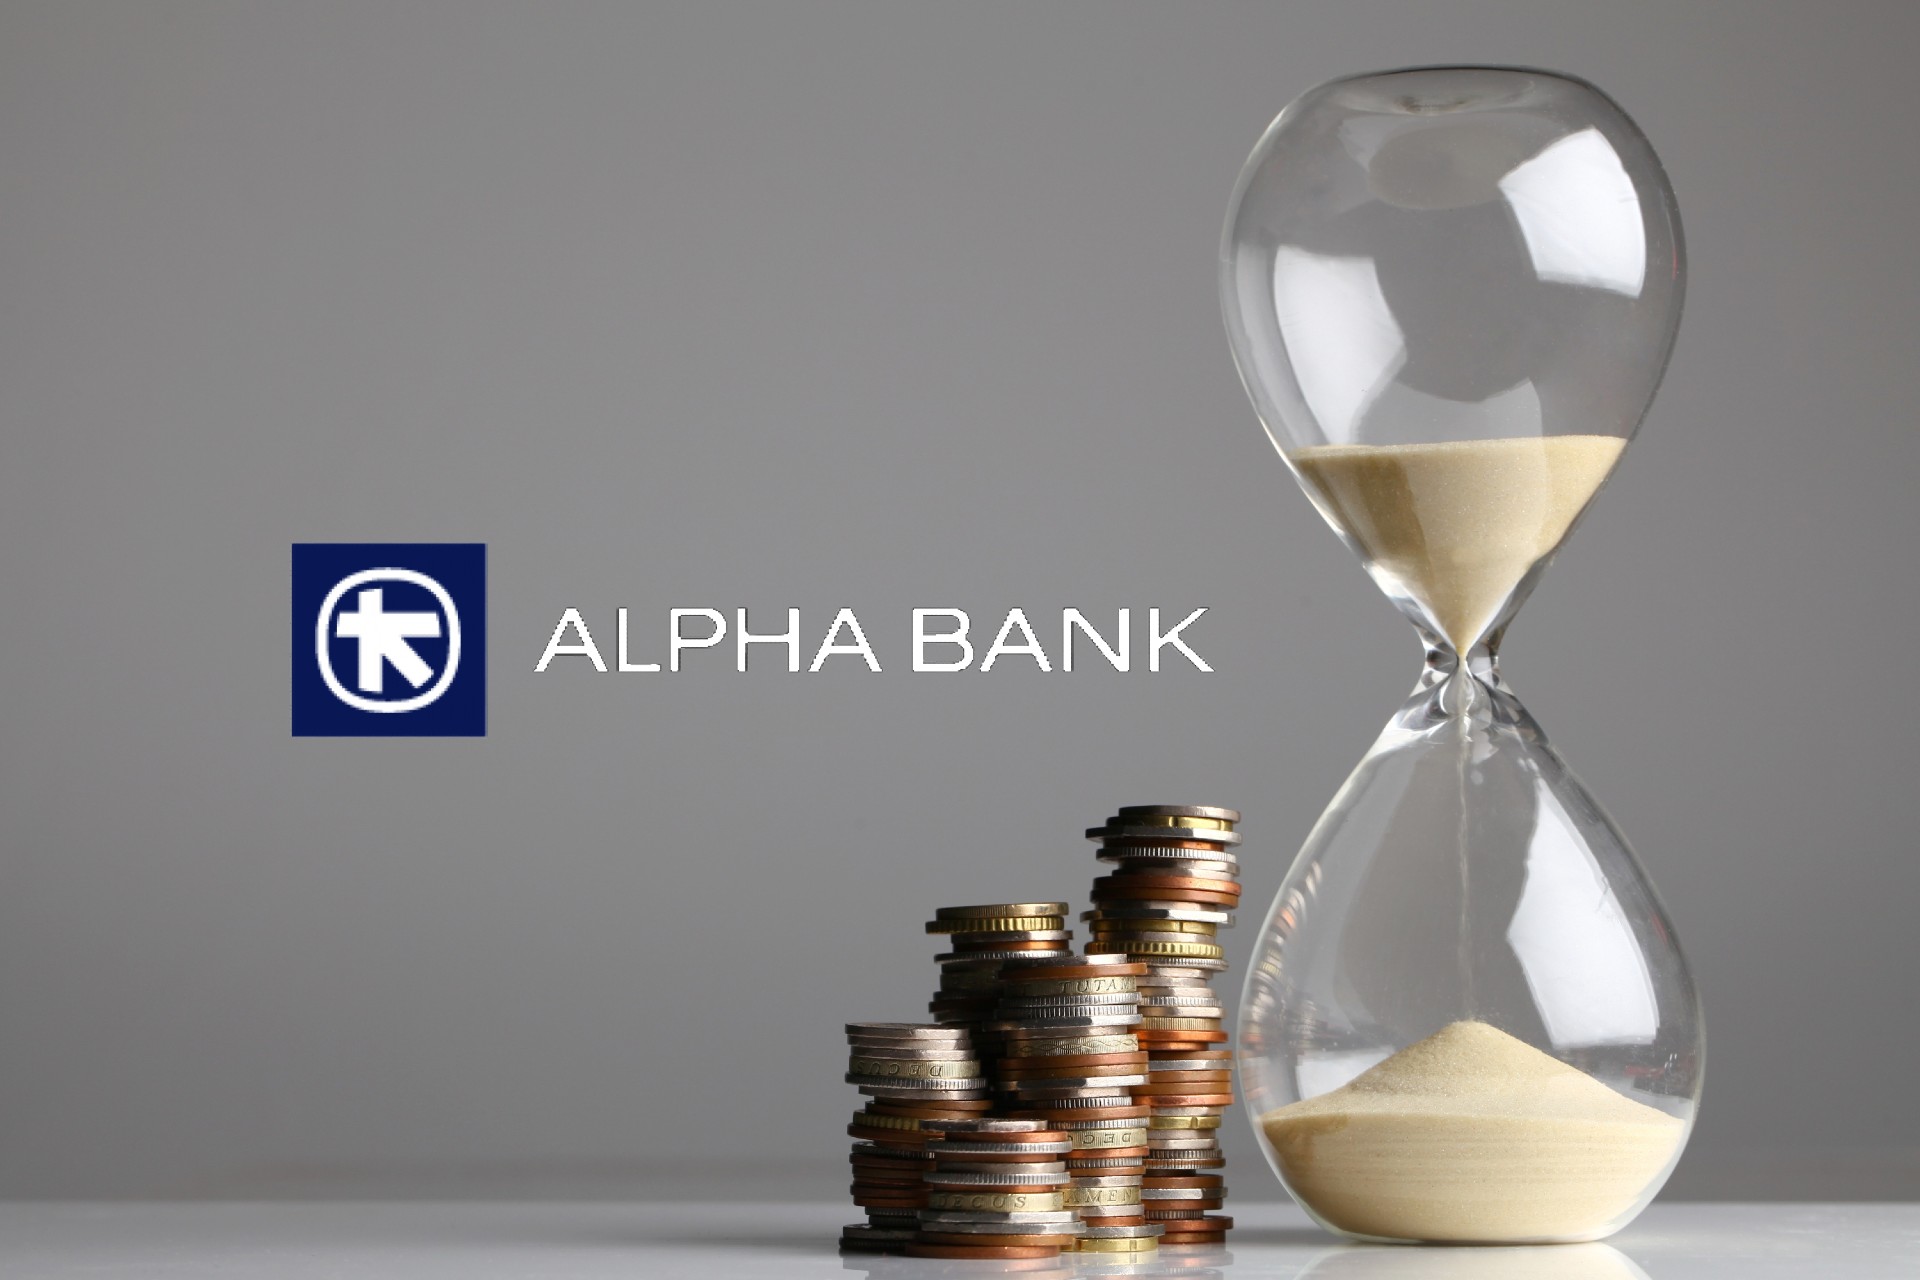 Τι αναμένεται από την επόμενη εβδομάδα σε οικονομία – χρηματιστήριο: Το 48ωρο της Alpha Bank καταλύτης ραγδαίων εξελίξεων - Σαββατοκύριακο διαβουλεύσεων και ενδείξεις για βελτίωση της τελικής προσφοράς από την UniCredit – Μέχρι τη Δευτέρα η απόφαση του ΤΧΣ!